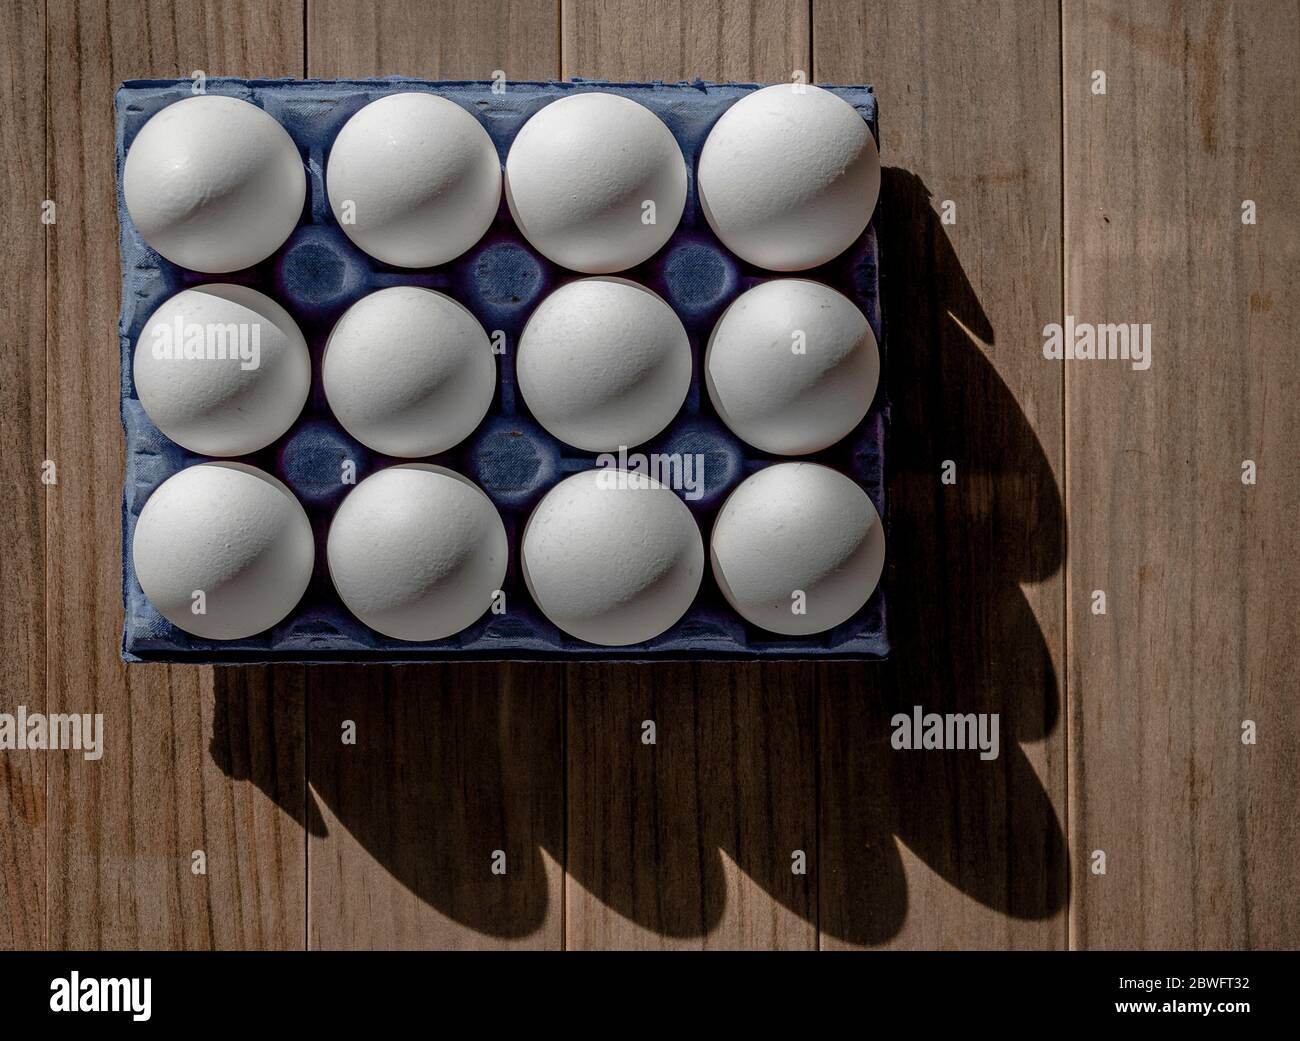 A dozen white eggs in a blue box. Shadows. Stock Photo